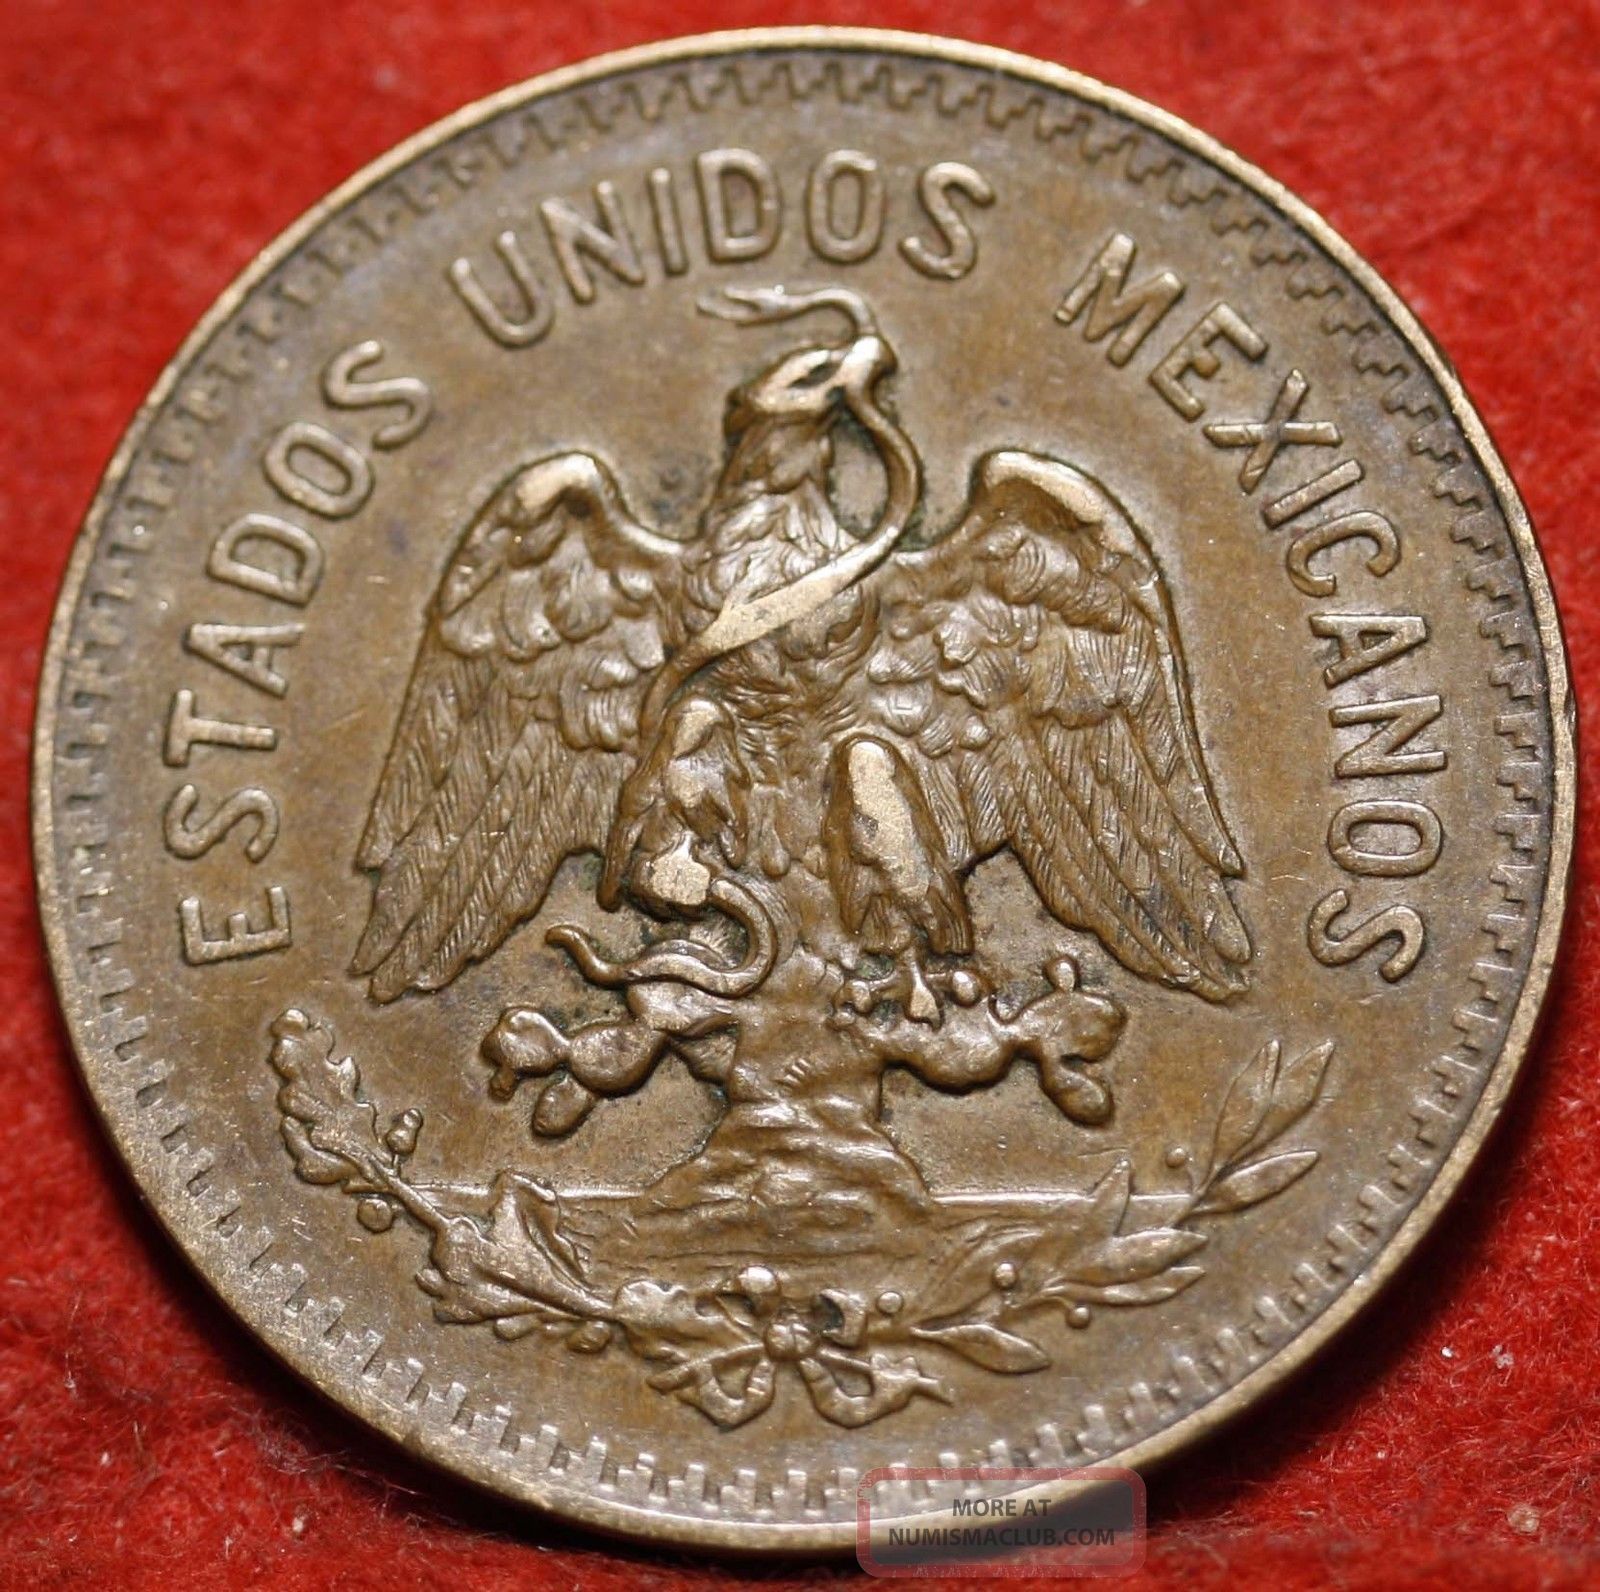 Circulated 1935 Mexico 5 Centavos Foreign Coin S/h Mexico photo